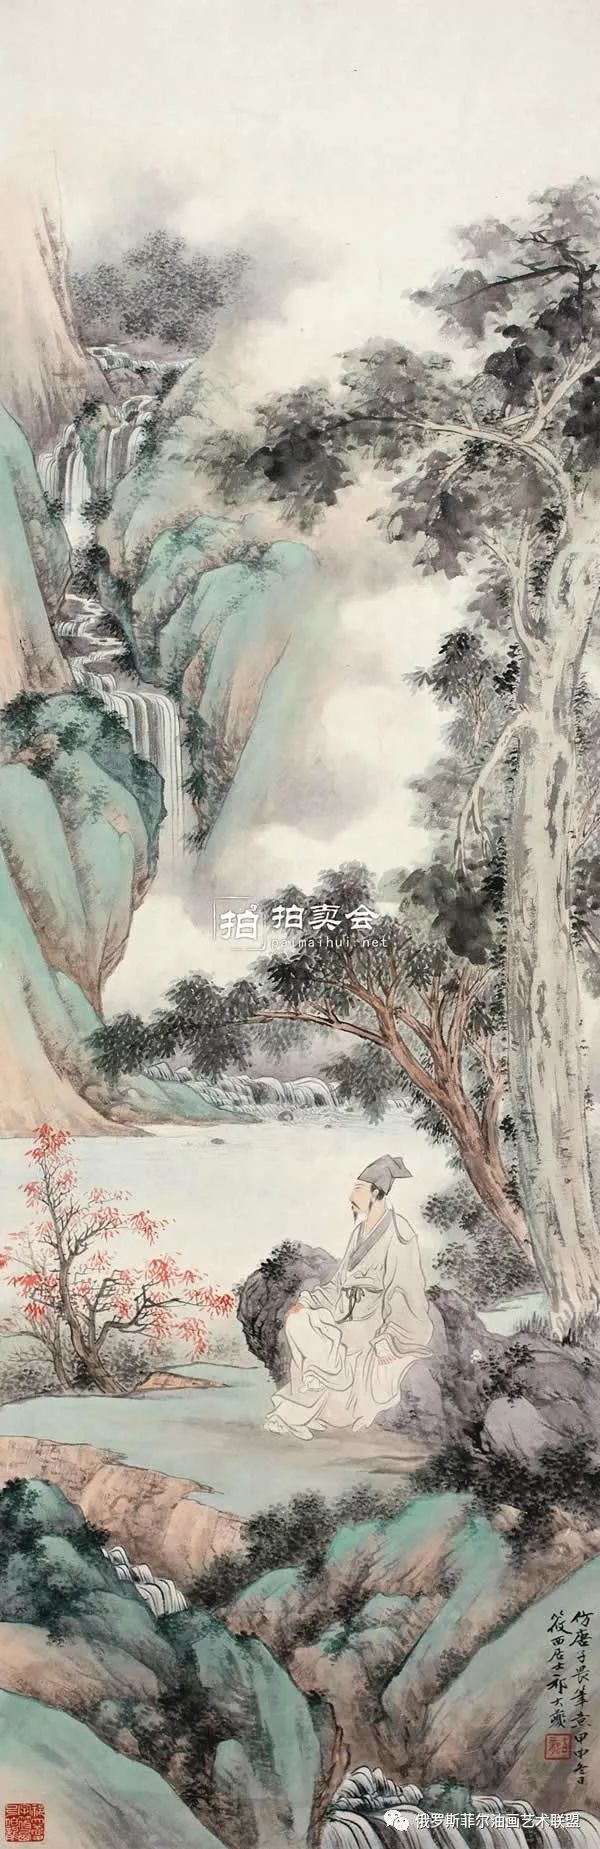 【国画精品】中国画家祁大夔的仿古山水作品欣赏